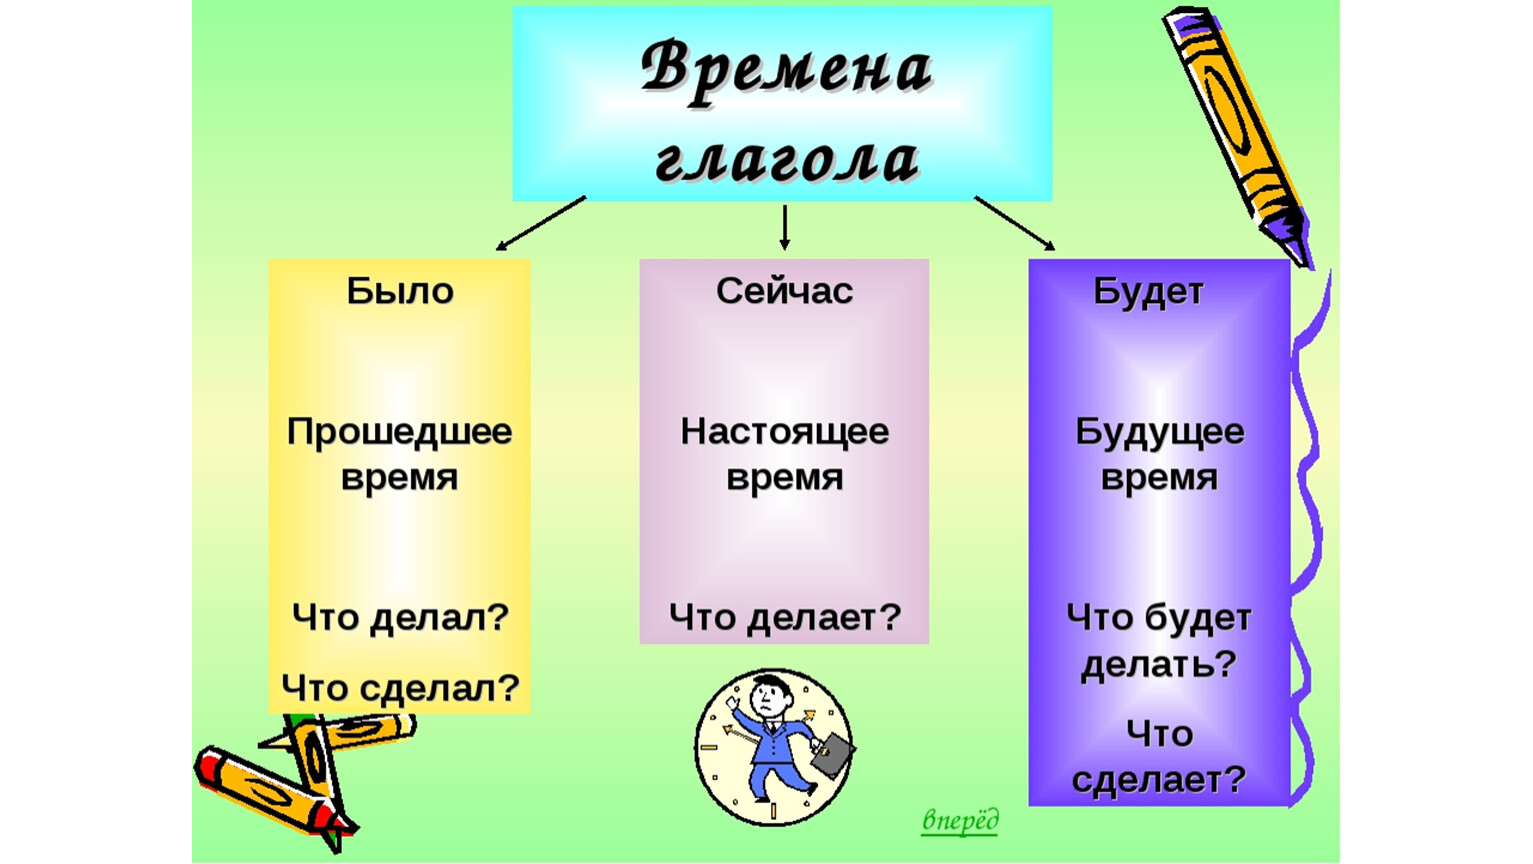 Не забудешь время глагола. Времена глаголов. Времена глагола в русском языке. Карточка по времени глаголов. Глаголы по временам в русском языке.